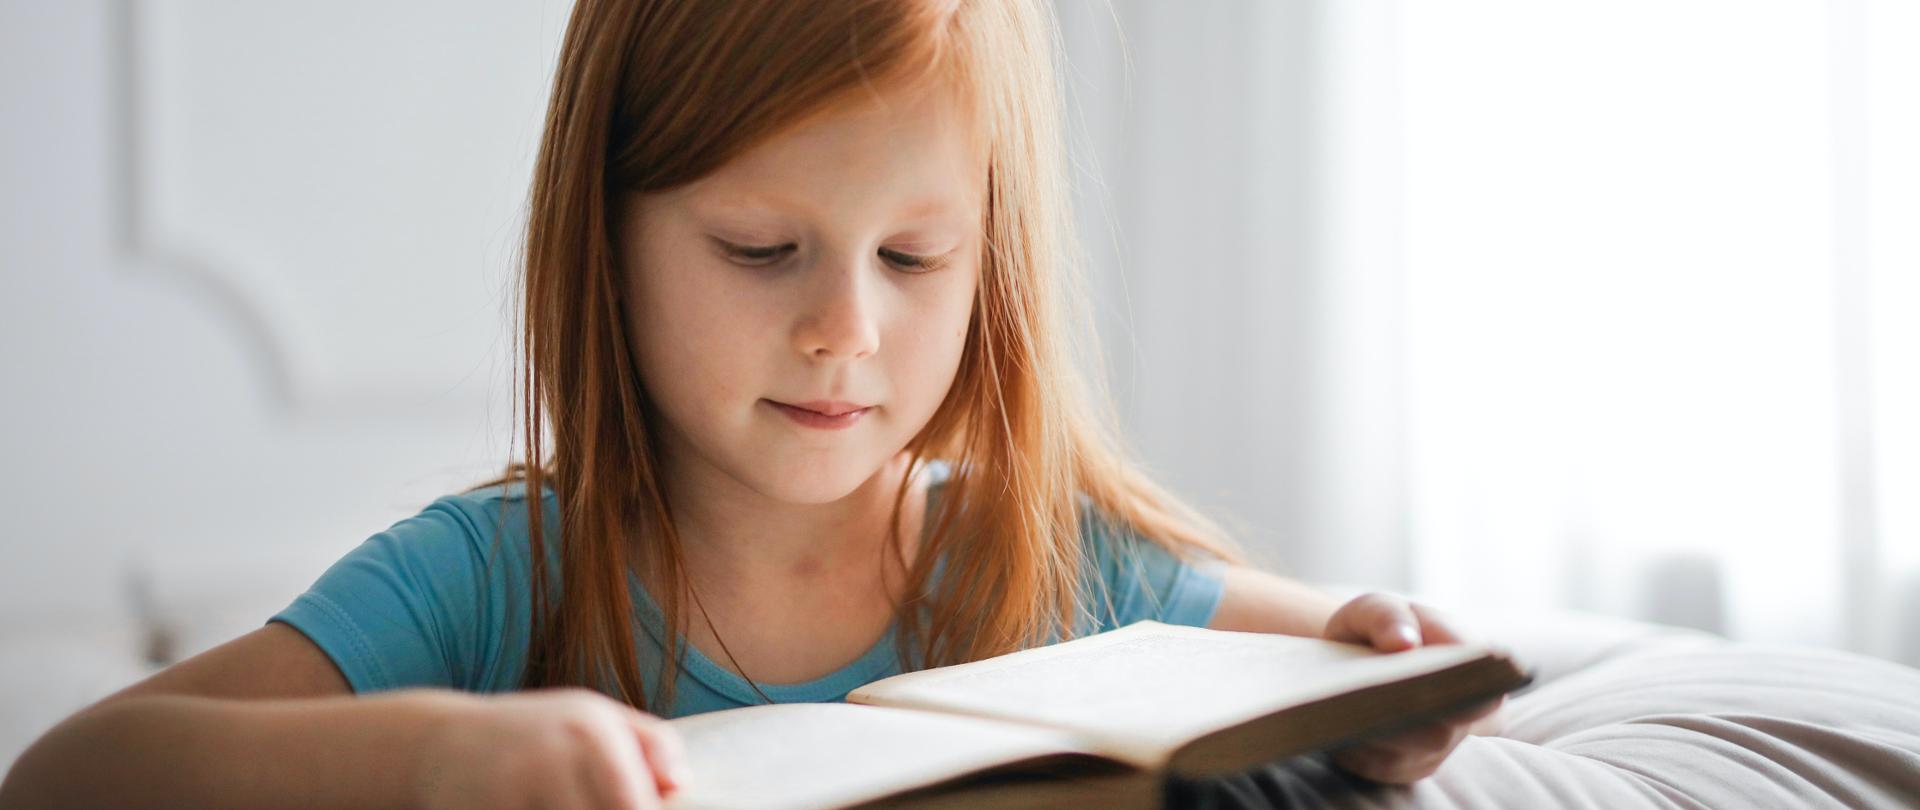 Zdjęcie w poziomie. Ruda dziewczynka w niebieskiej bluzce czytająca książkę.